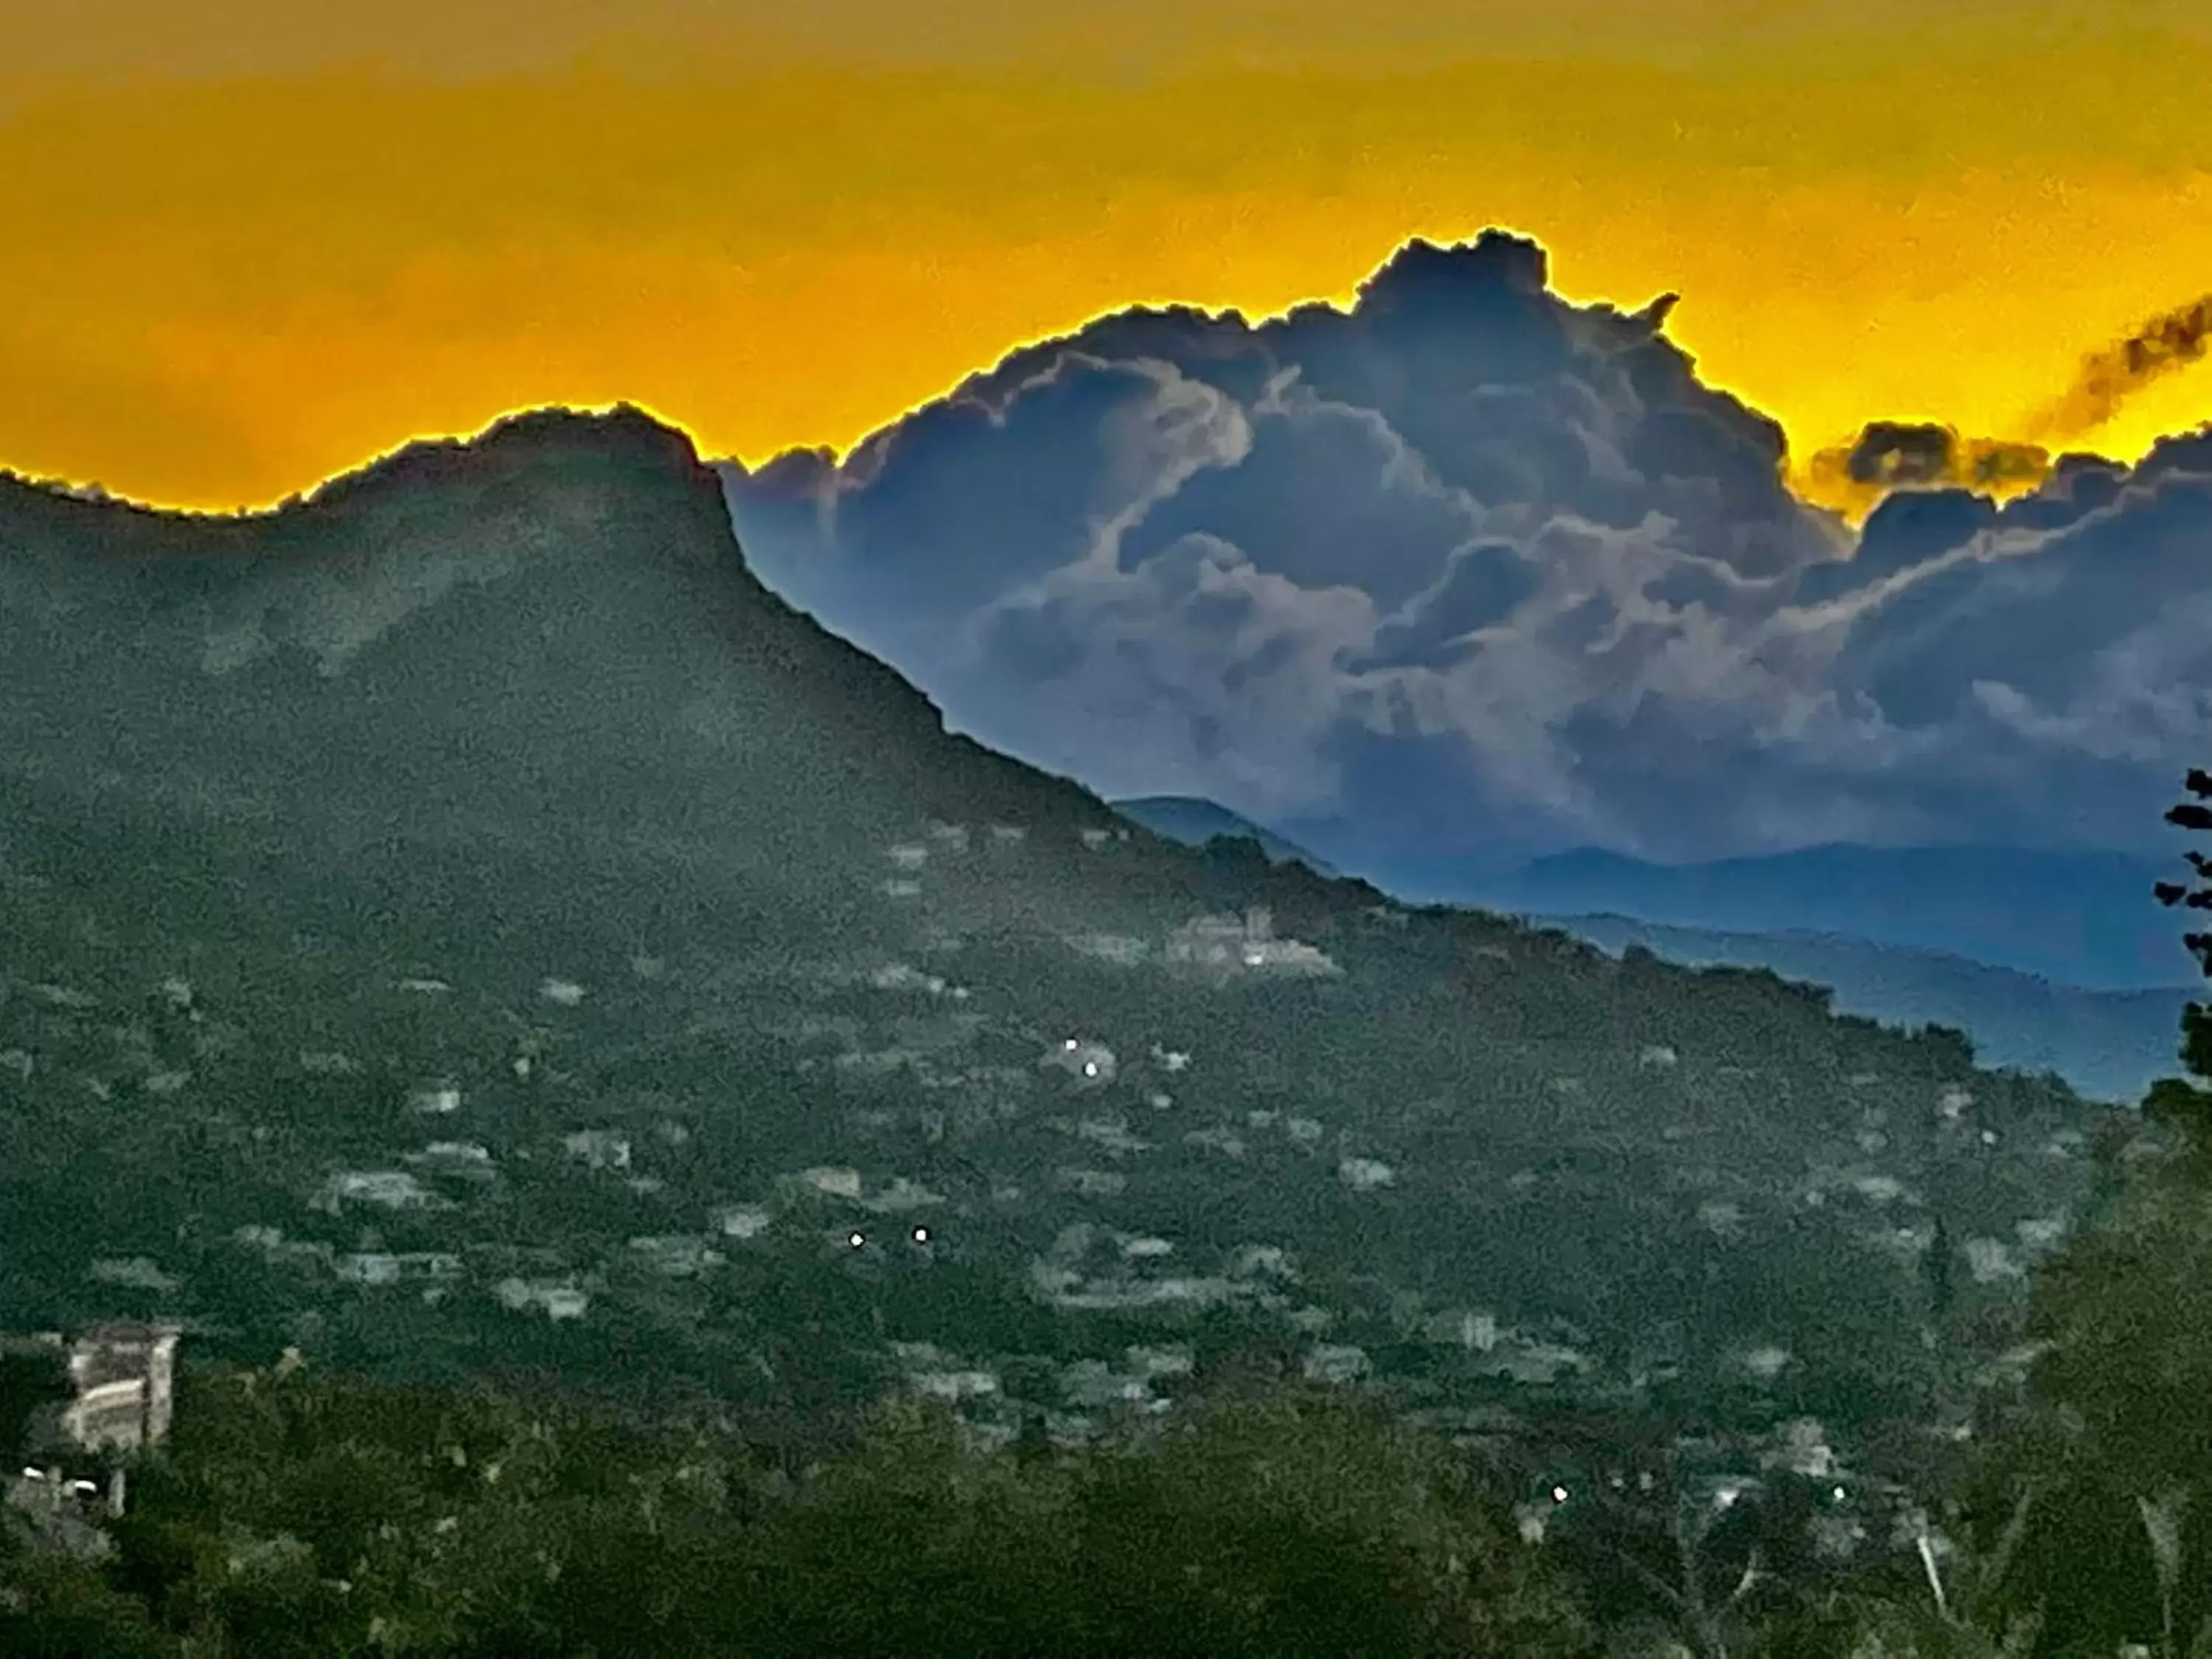 Sunset, Mountain View in Les 4 éléments